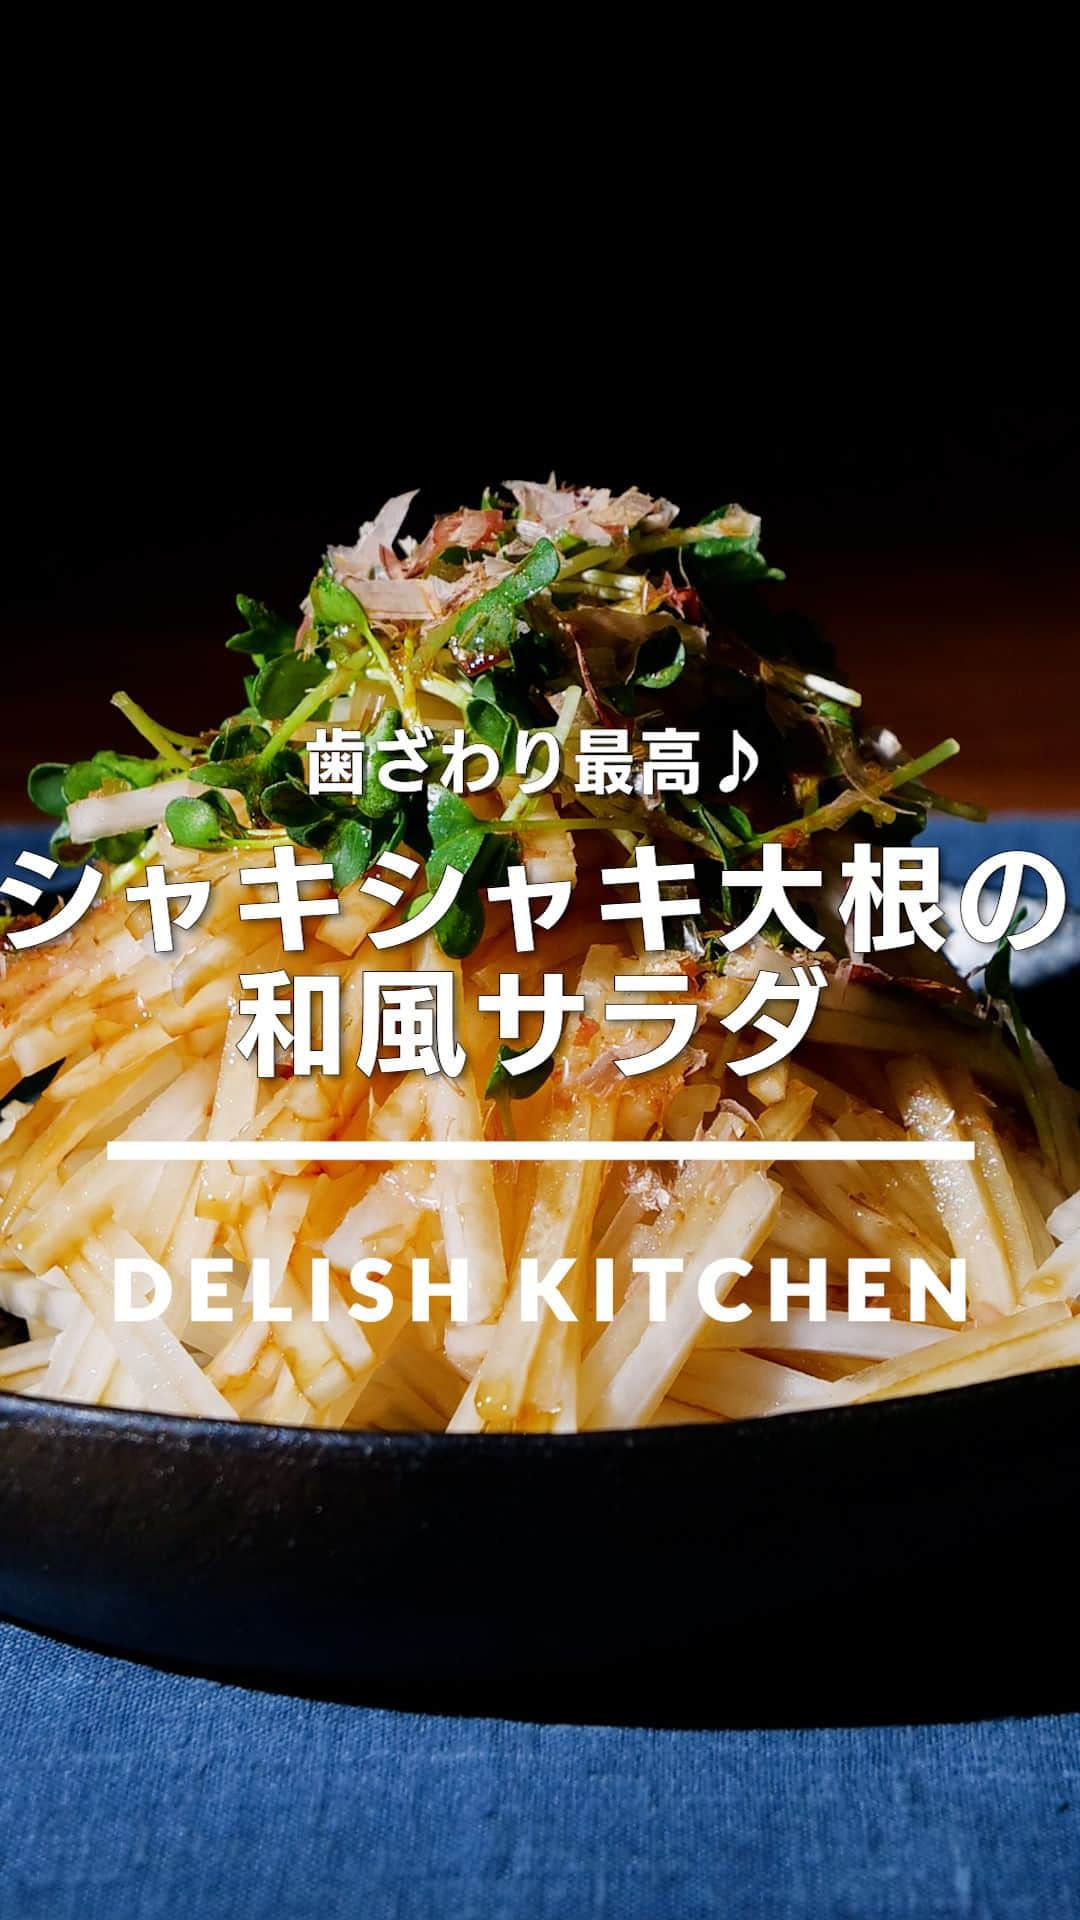 DELISH KITCHENのインスタグラム：「「シャキシャキ大根の和風サラダ」 ⠀⠀ シンプルだけどおいしい！大根の和風サラダをご紹介♪かつらむきにした大根を繊維にそって千切りにすることで、シャキシャキとした食感を楽しめる一品に仕上がります。 ⠀⠀ ★┈┈┈┈┈┈┈┈┈┈┈┈★ au5Gチャンネルでも、その他様々なDELISH KITCHENの簡単レシピを配信中！ 詳しくは @delishkitchen.tv ハイライトから♪ ★┈┈┈┈┈┈┈┈┈┈┈┈★ ⠀⠀ 動画を一時停止したい場合は、画面を長押ししてください！ ⠀⠀ 動画の詳細が気になる人はアプリで「シャキシャキ大根の和風サラダ」で検索してみてくださいね♪ ⠀⠀ ■材料 (2人分) ・大根　10cm(300g) ・かいわれ　1/2パック(25g) ・かつお節　適量 ☆合わせ調味料 ・砂糖　小さじ1/2 ・酢　小さじ1 ・しょうゆ　大さじ1 ・ごま油　大さじ1/2 ⠀⠀ ■手順 (1)大根は長さを半分に切り、皮を厚めにむく。親指を包丁に添え、大根をまわしながら厚さ2〜3mmにむく(かつらむき)。大根を広げ、2〜3mm幅の細切りにする。残った部分は、縦2〜3mmに切って切り口を下にし、2〜3mm幅の細切りにする。かいわれは根元を切り落とし、長さを半分に切る。(かつらむきは力を入れすぎずゆっくりと行い、ケガをしないように注意しましょう。) (2)ボウルに☆を入れて混ぜる。 (3)器に大根、かいわれを盛り、☆をかけてかつお節をのせる。 ⠀⠀ #デリッシュキッチン #DELISHKITCHEN #料理 #レシピ #時短 #おうちごはん #手料理 #簡単レシピ #手作りごはん #今日のごはん #おうちカフェ #大根サラダ #大根」